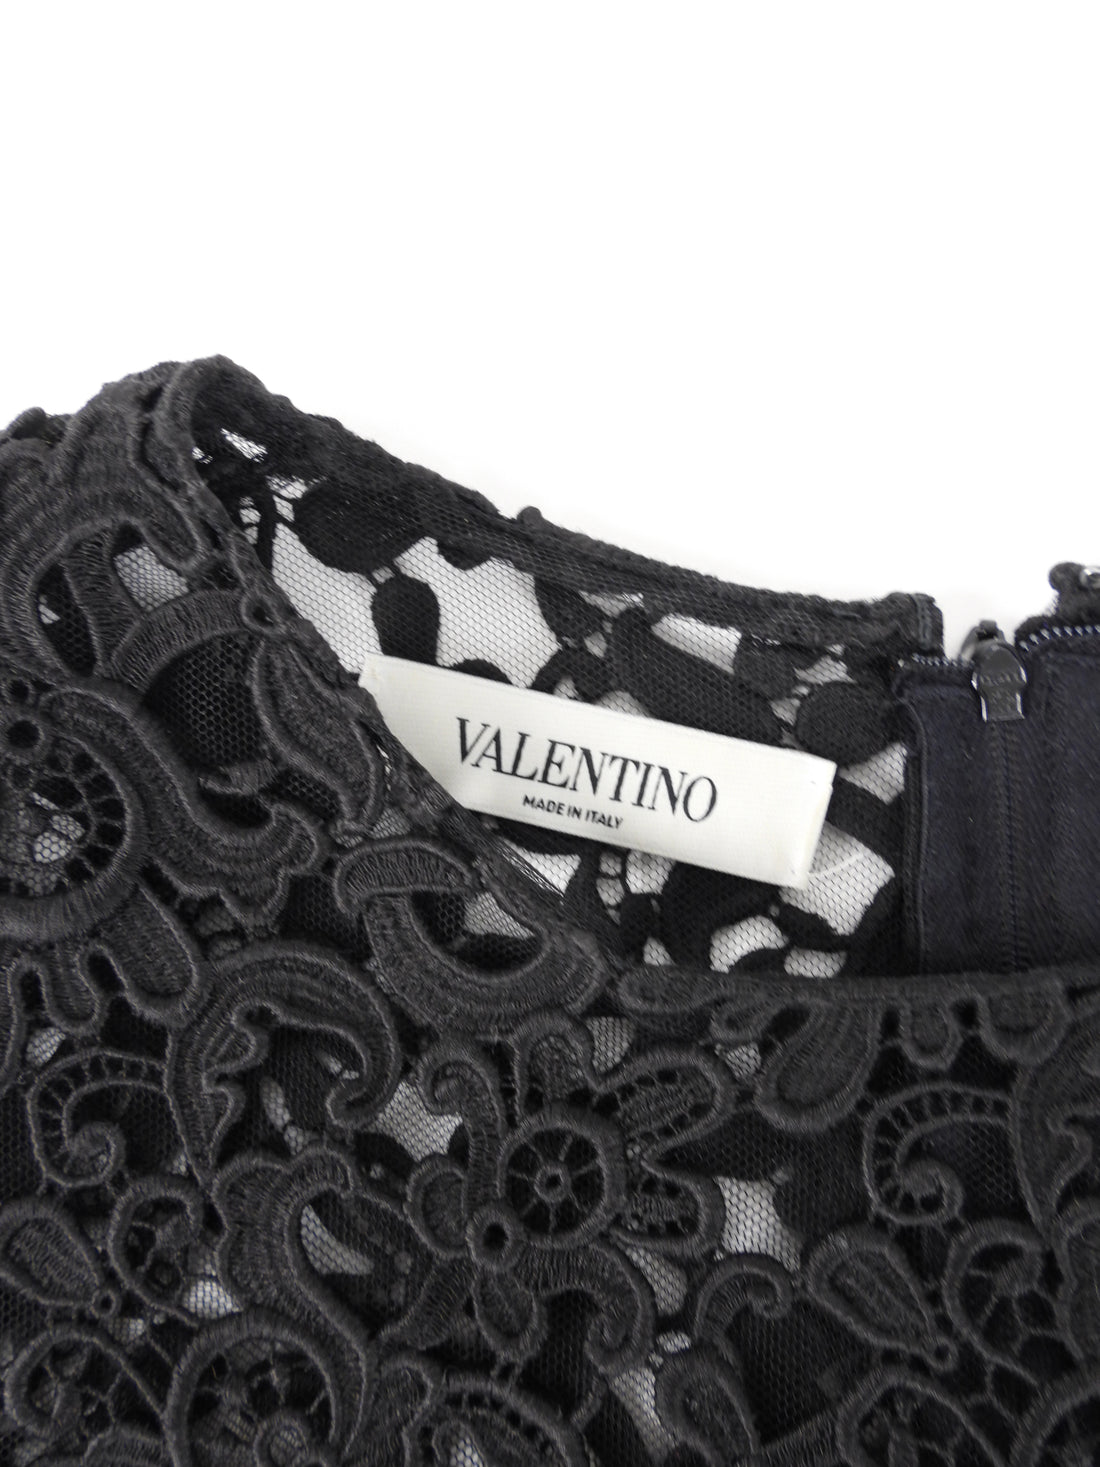 Valentino Black Guipure Lace Top - L (10)